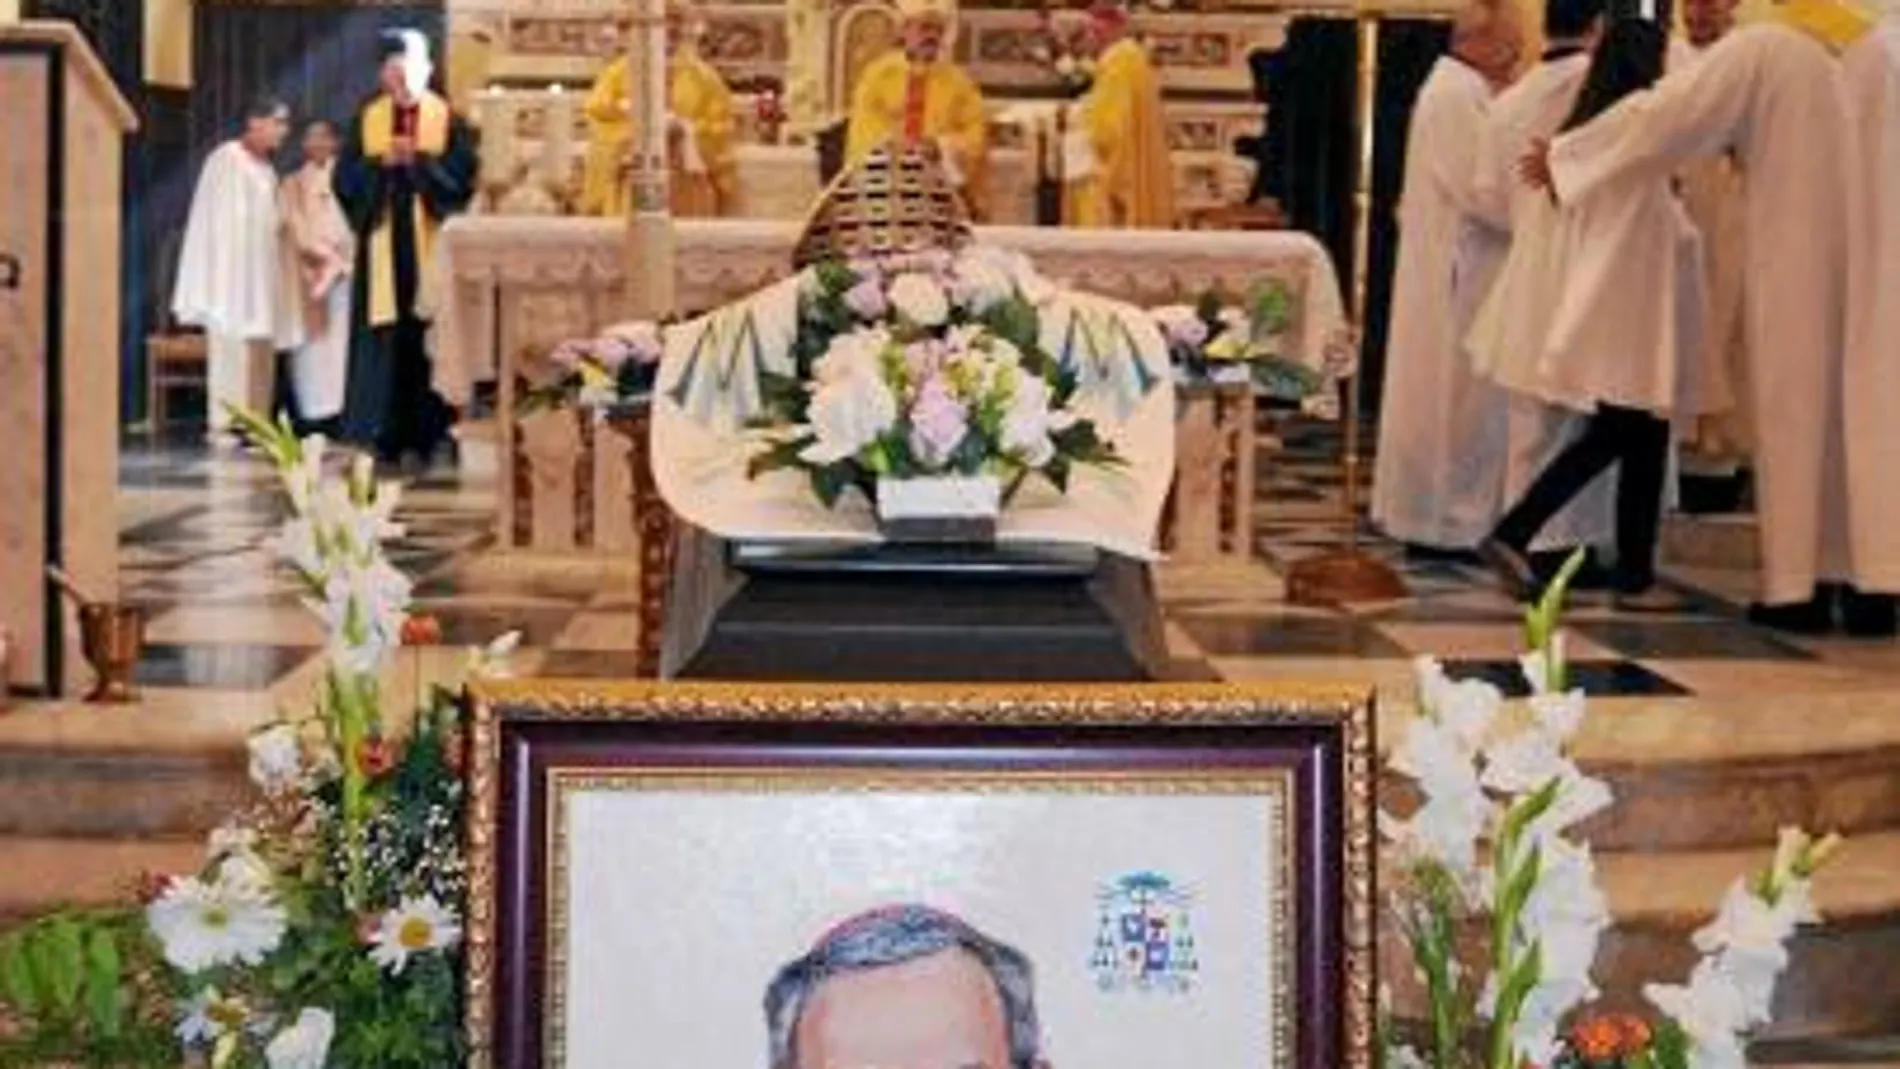 El obispo italiano Luigi Padovese era el presidente de la Conferencia Episcopal de Turquía cuando fue asesinado por su chófer musulmán